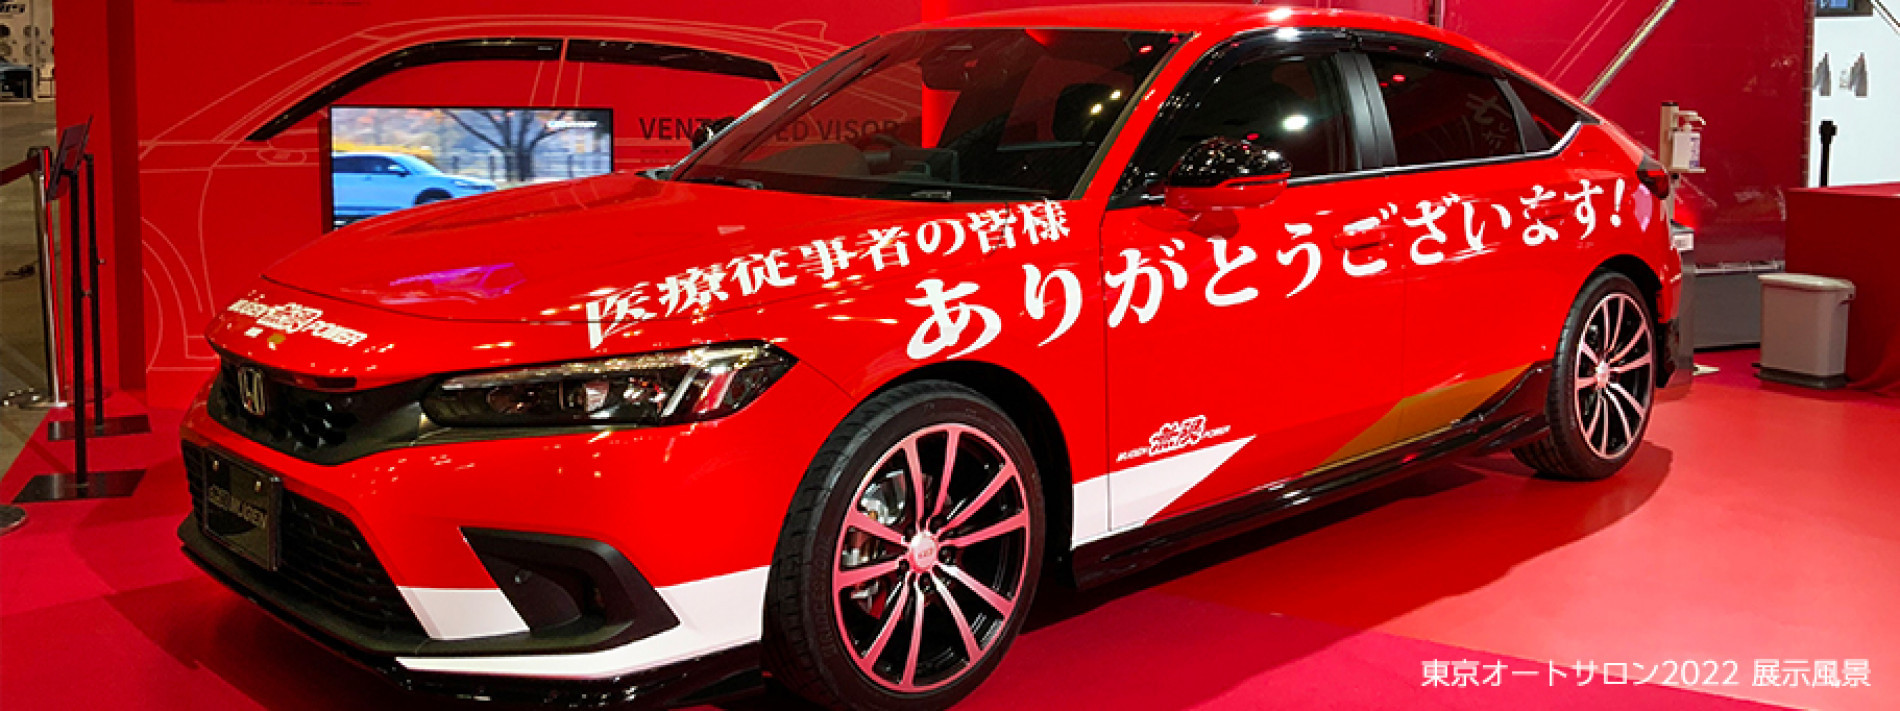 Honda Hadirkan Mobil e:HEV, N Series dan Mugen di Osaka Auto Messe 2022